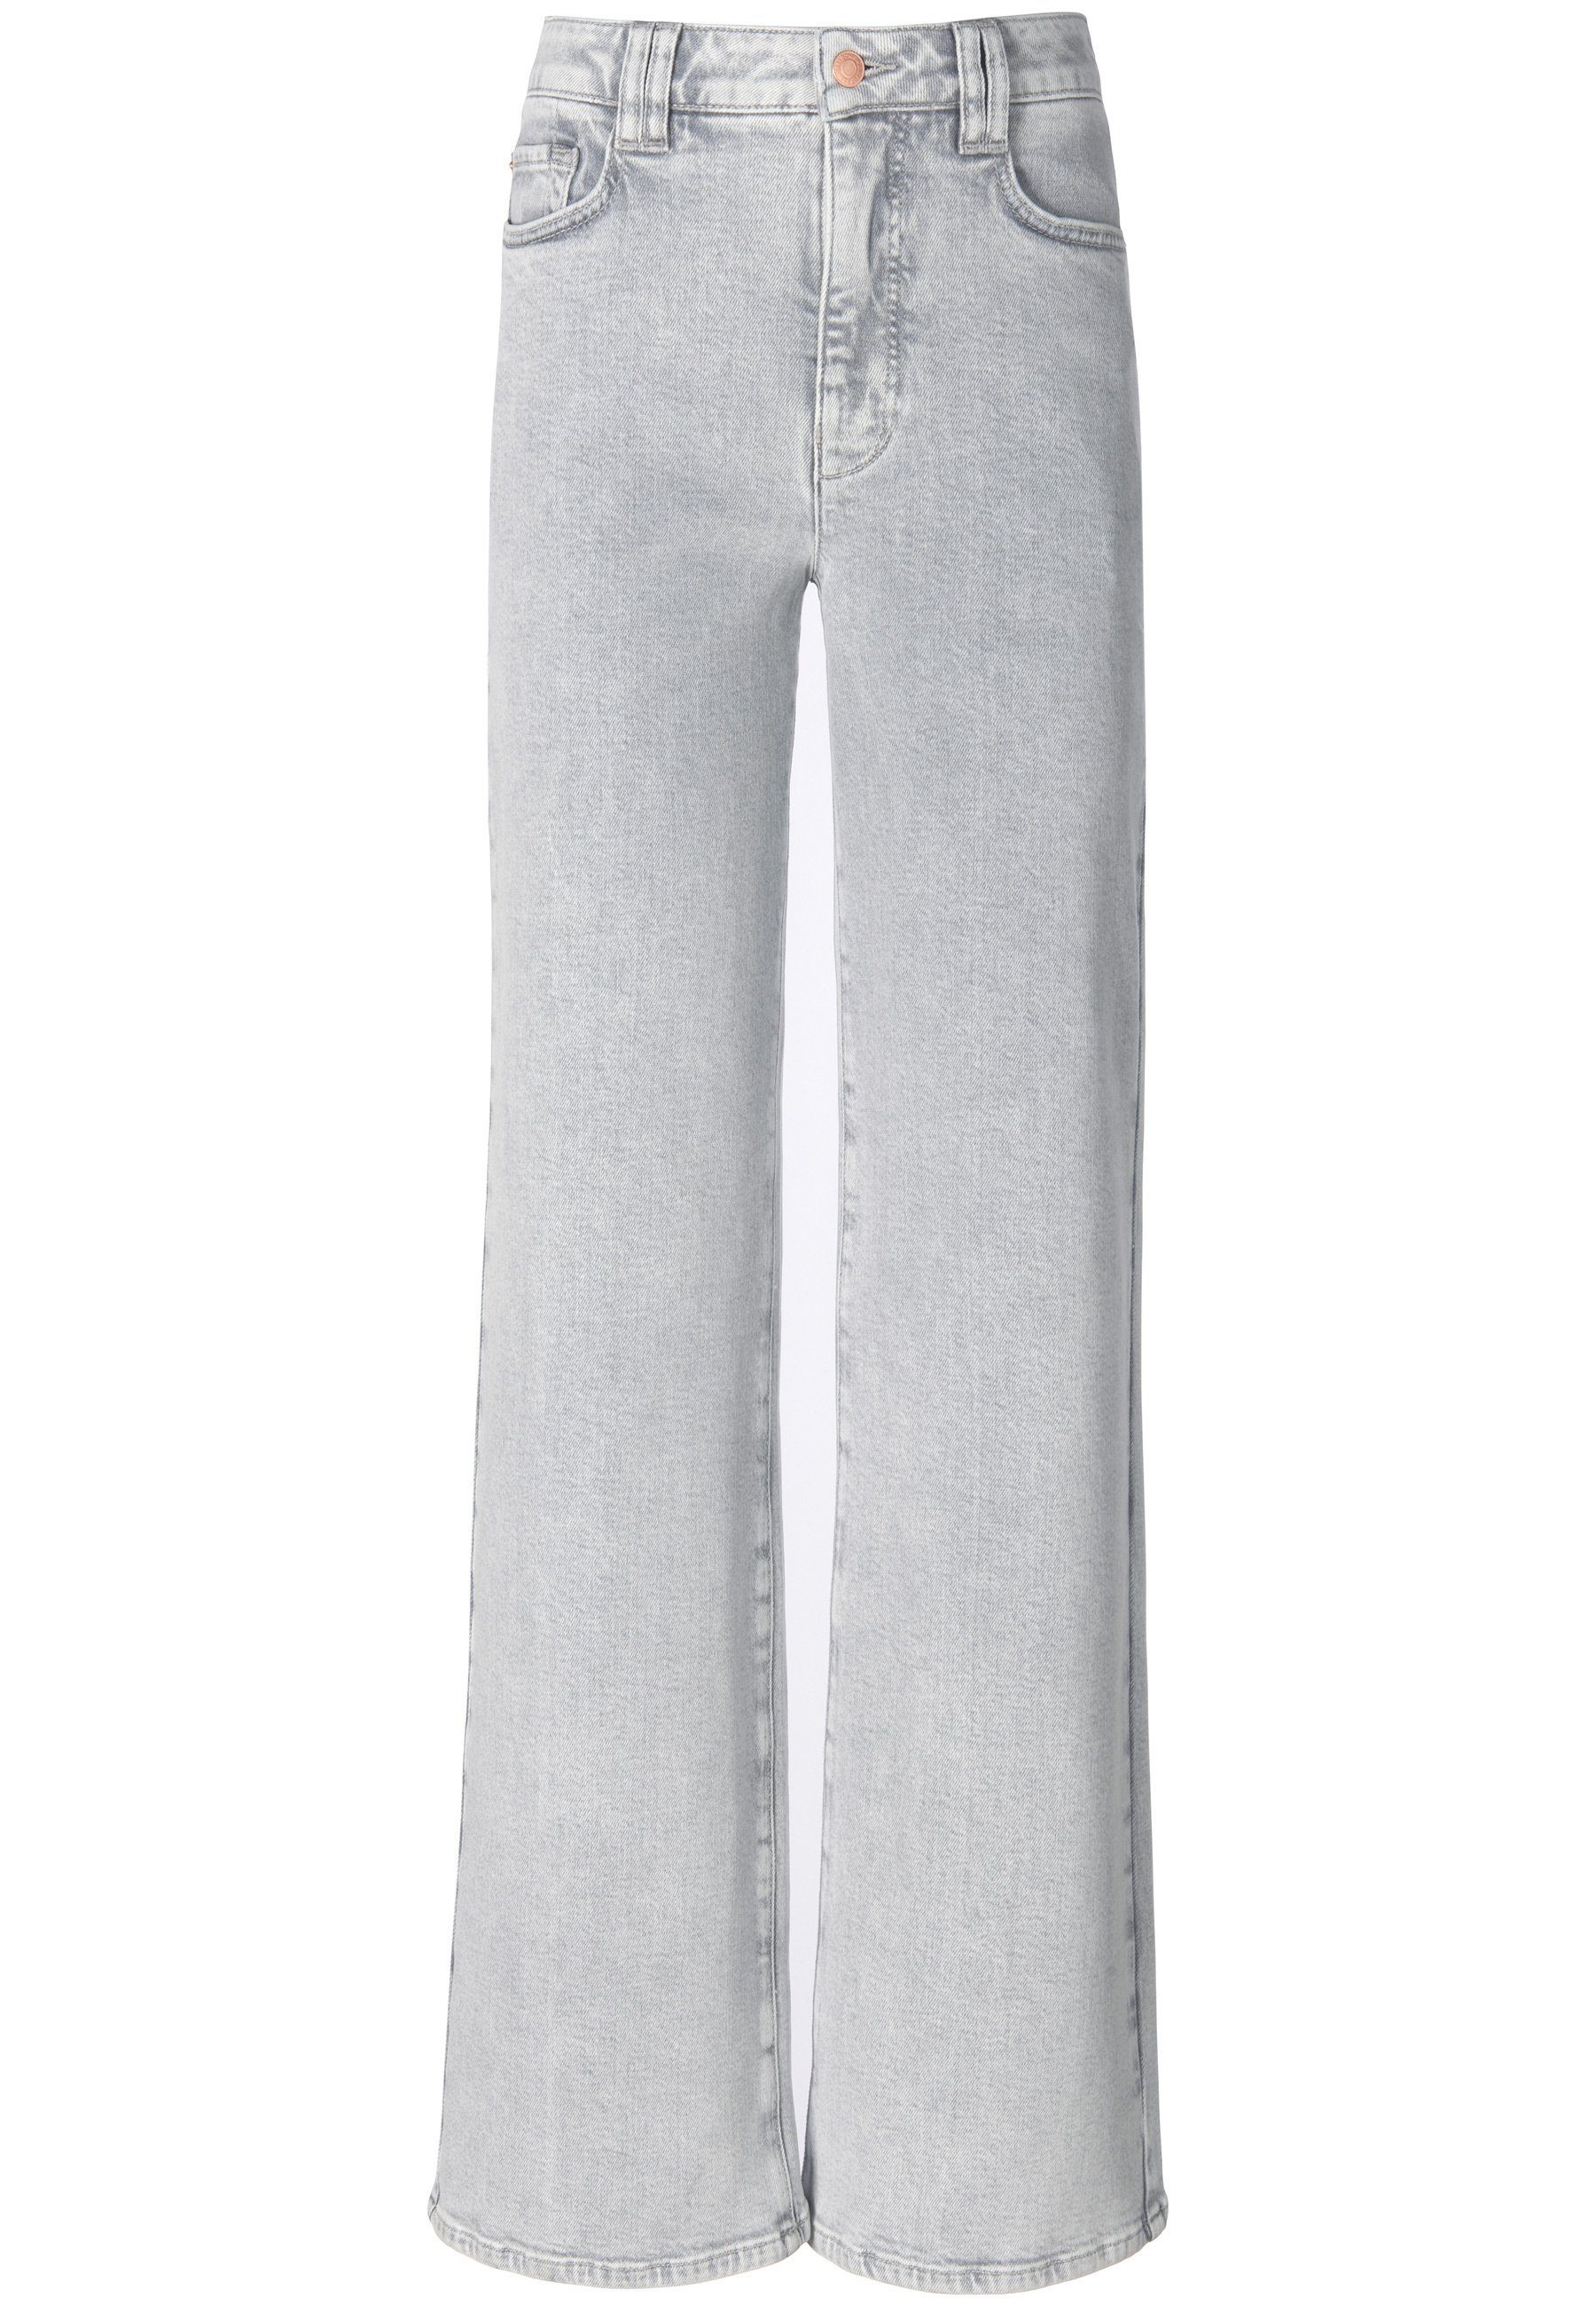 Cotton Taschen mit DAY.LIKE 5-Pocket-Jeans grau